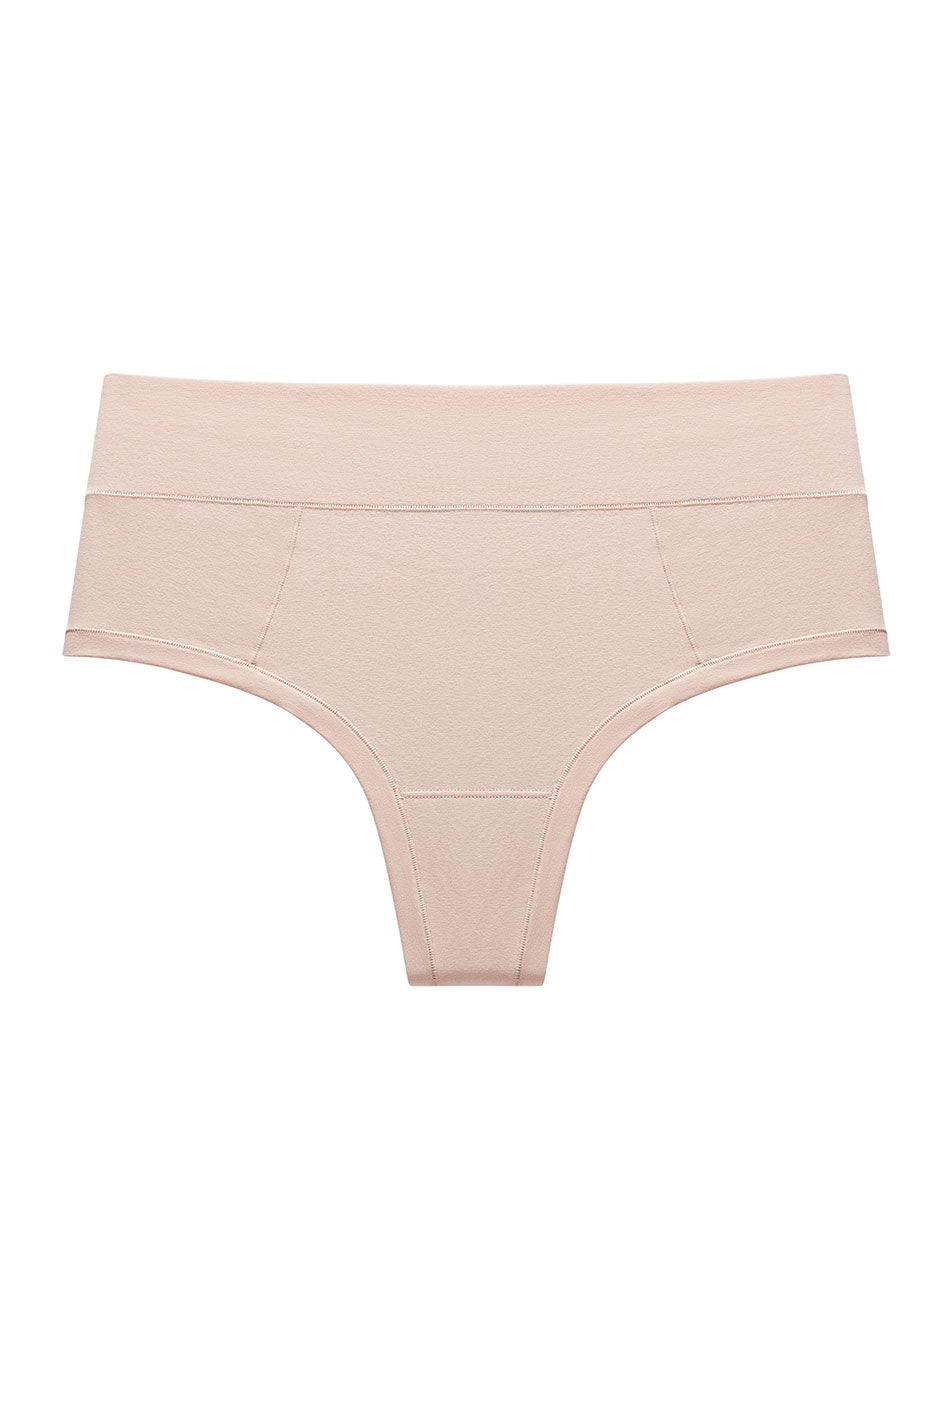 Pima Cotton Underwear: Shop Now in US & Canada - Understance